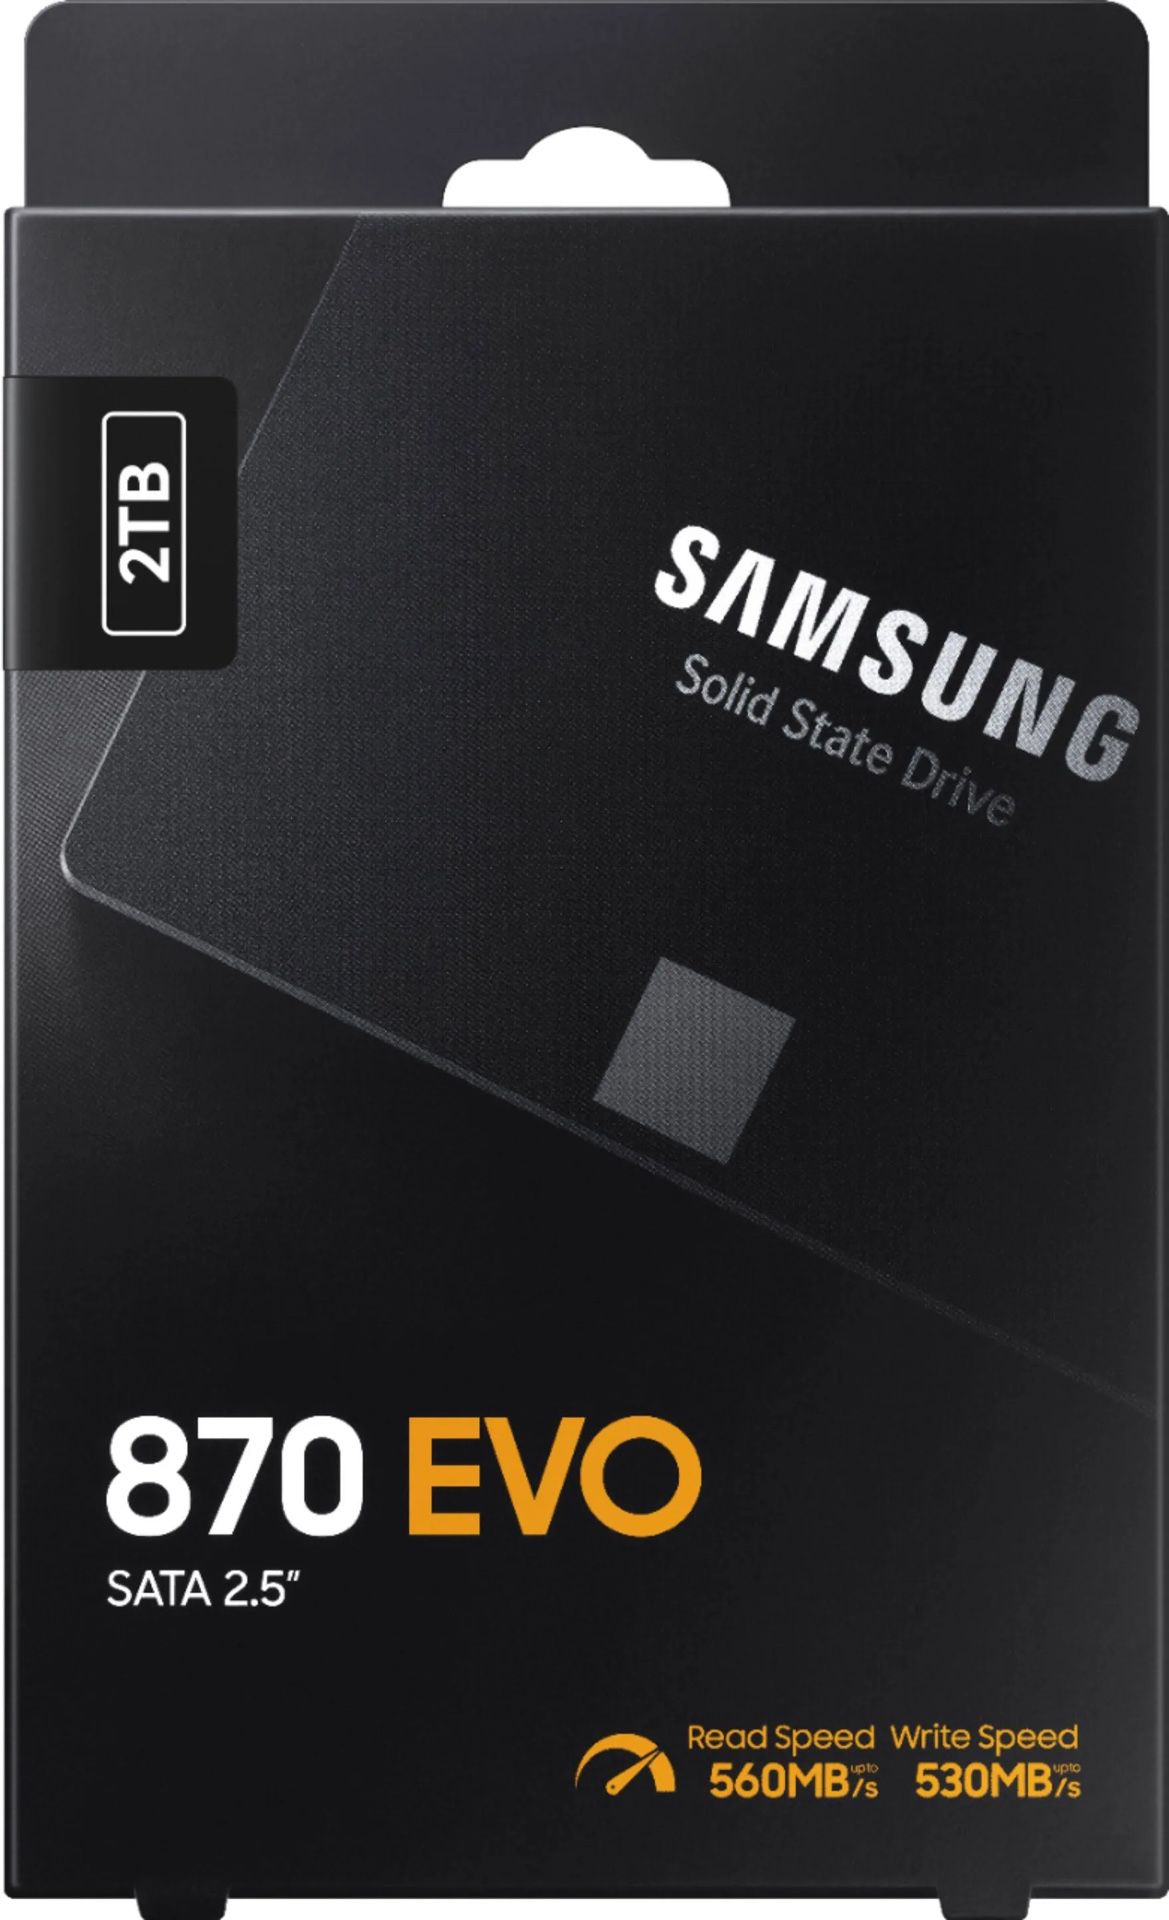 Samsung 870 EVO SATA 2.5” SSD